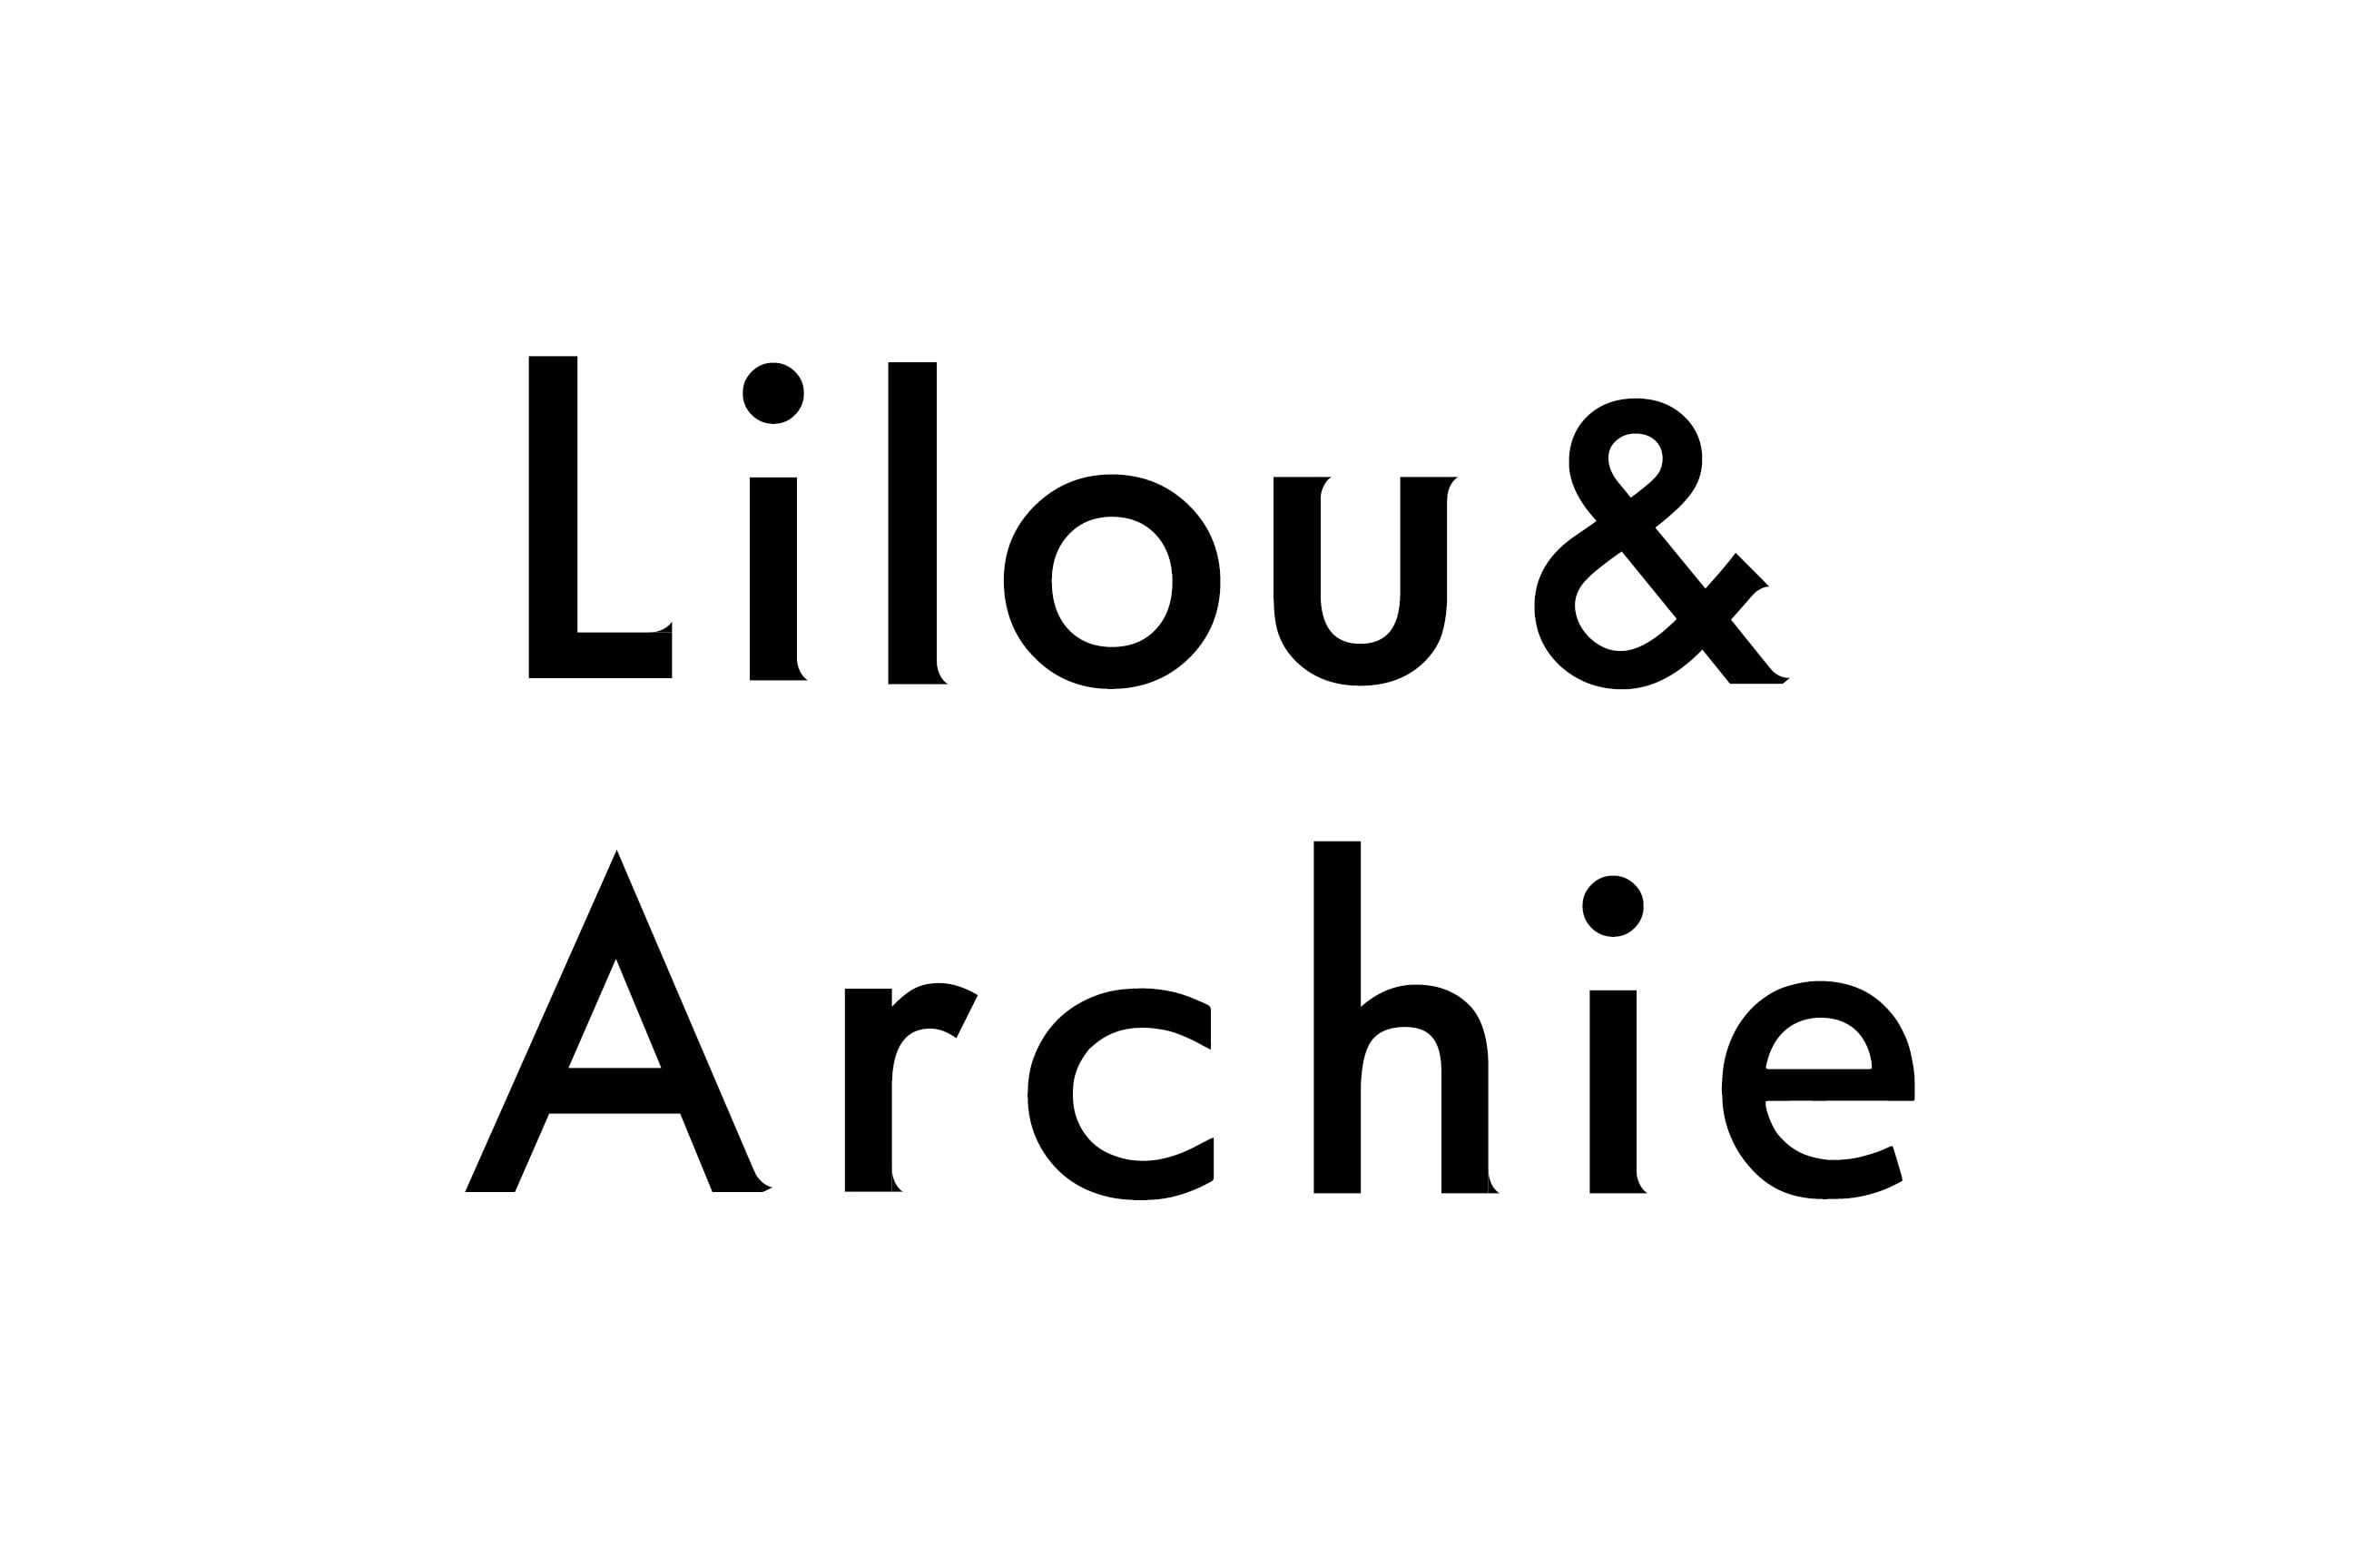 Lilou&Archie